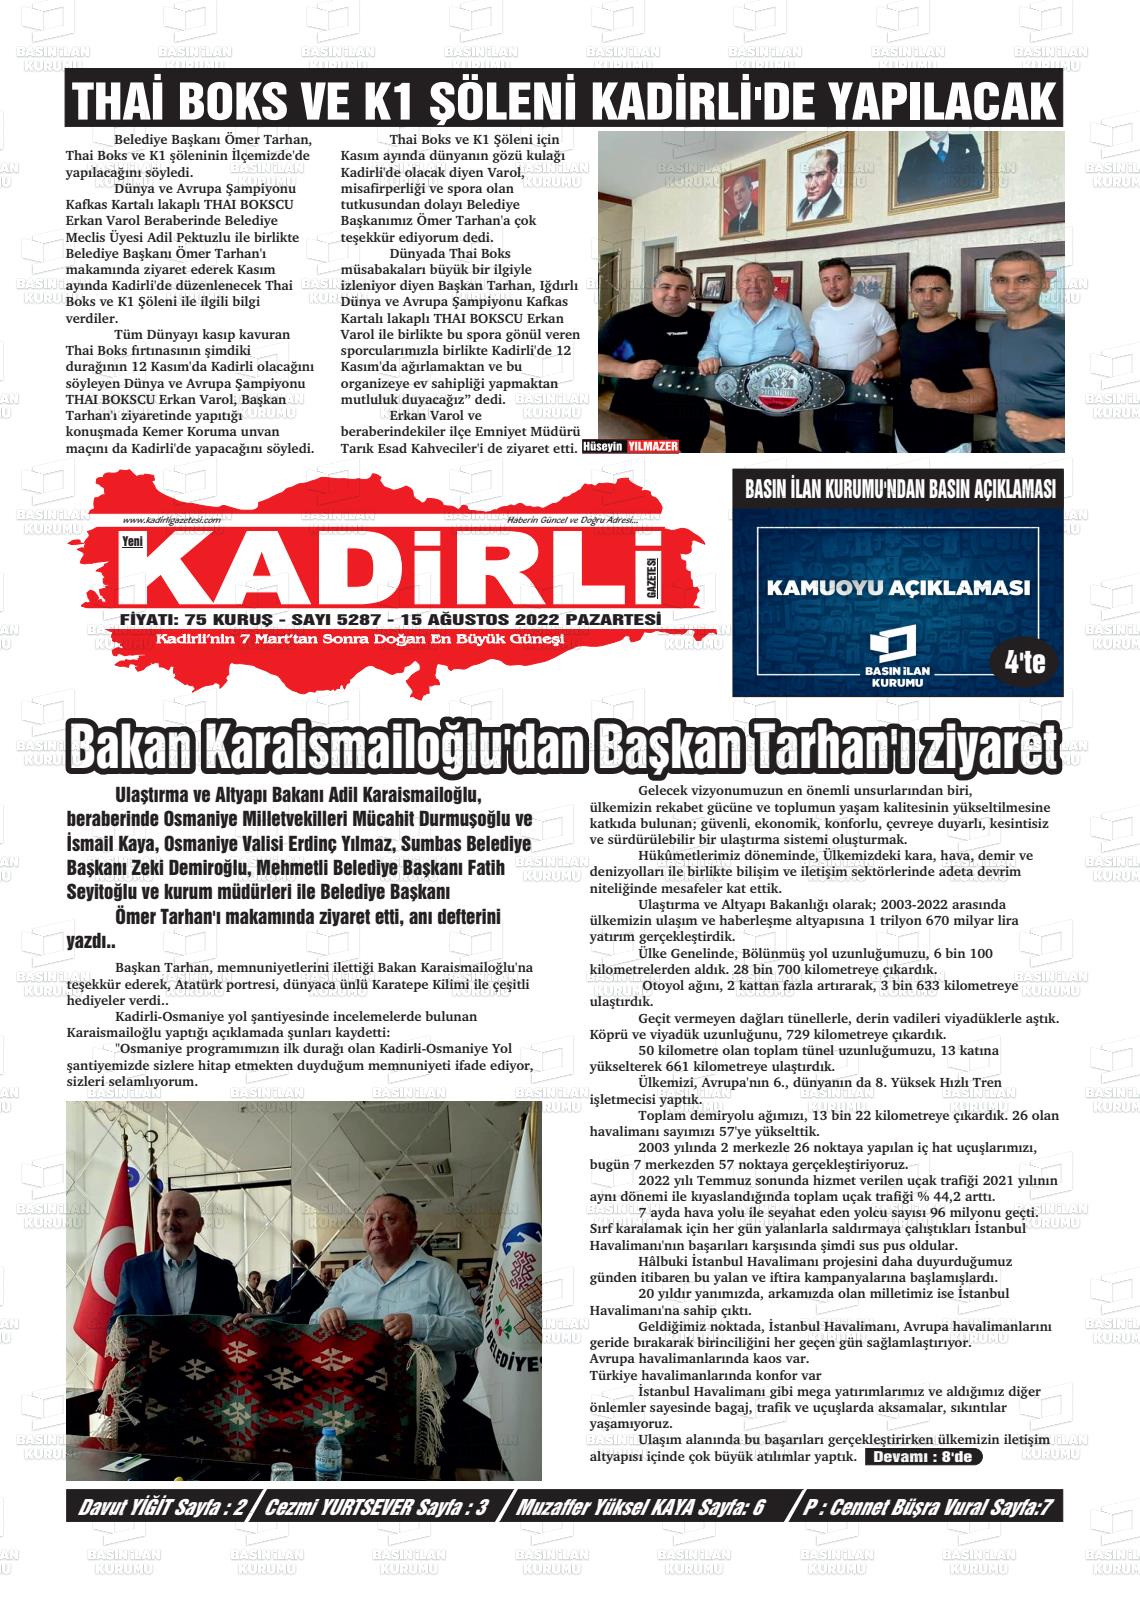 15 Ağustos 2022 Yeni Kadirli Gazete Manşeti